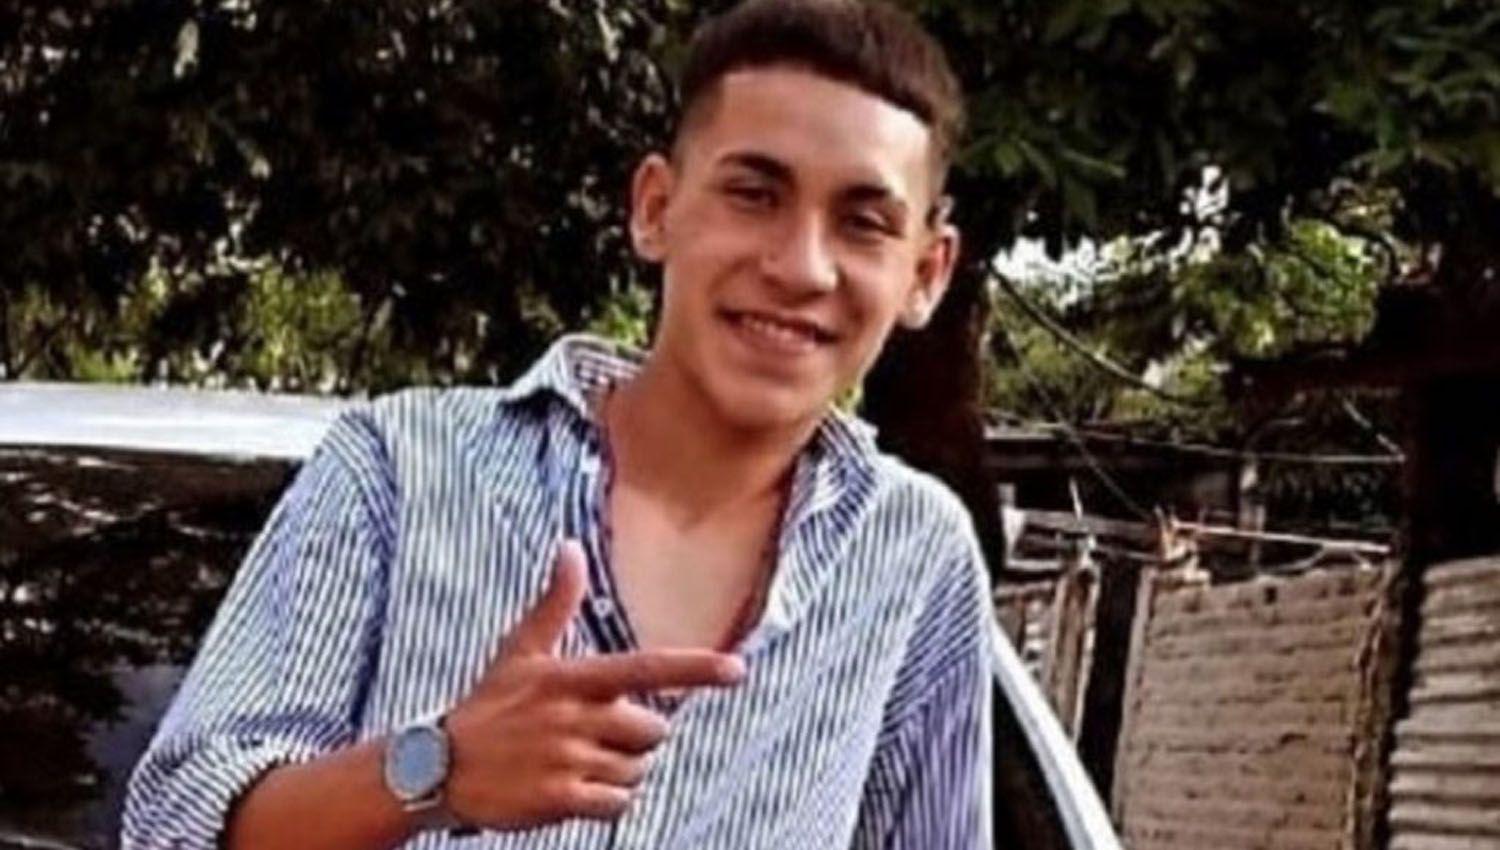 Hallan el cuerpo Lautaro el joven desaparecido en el riacuteo tras persecucioacuten policial en Corrientes